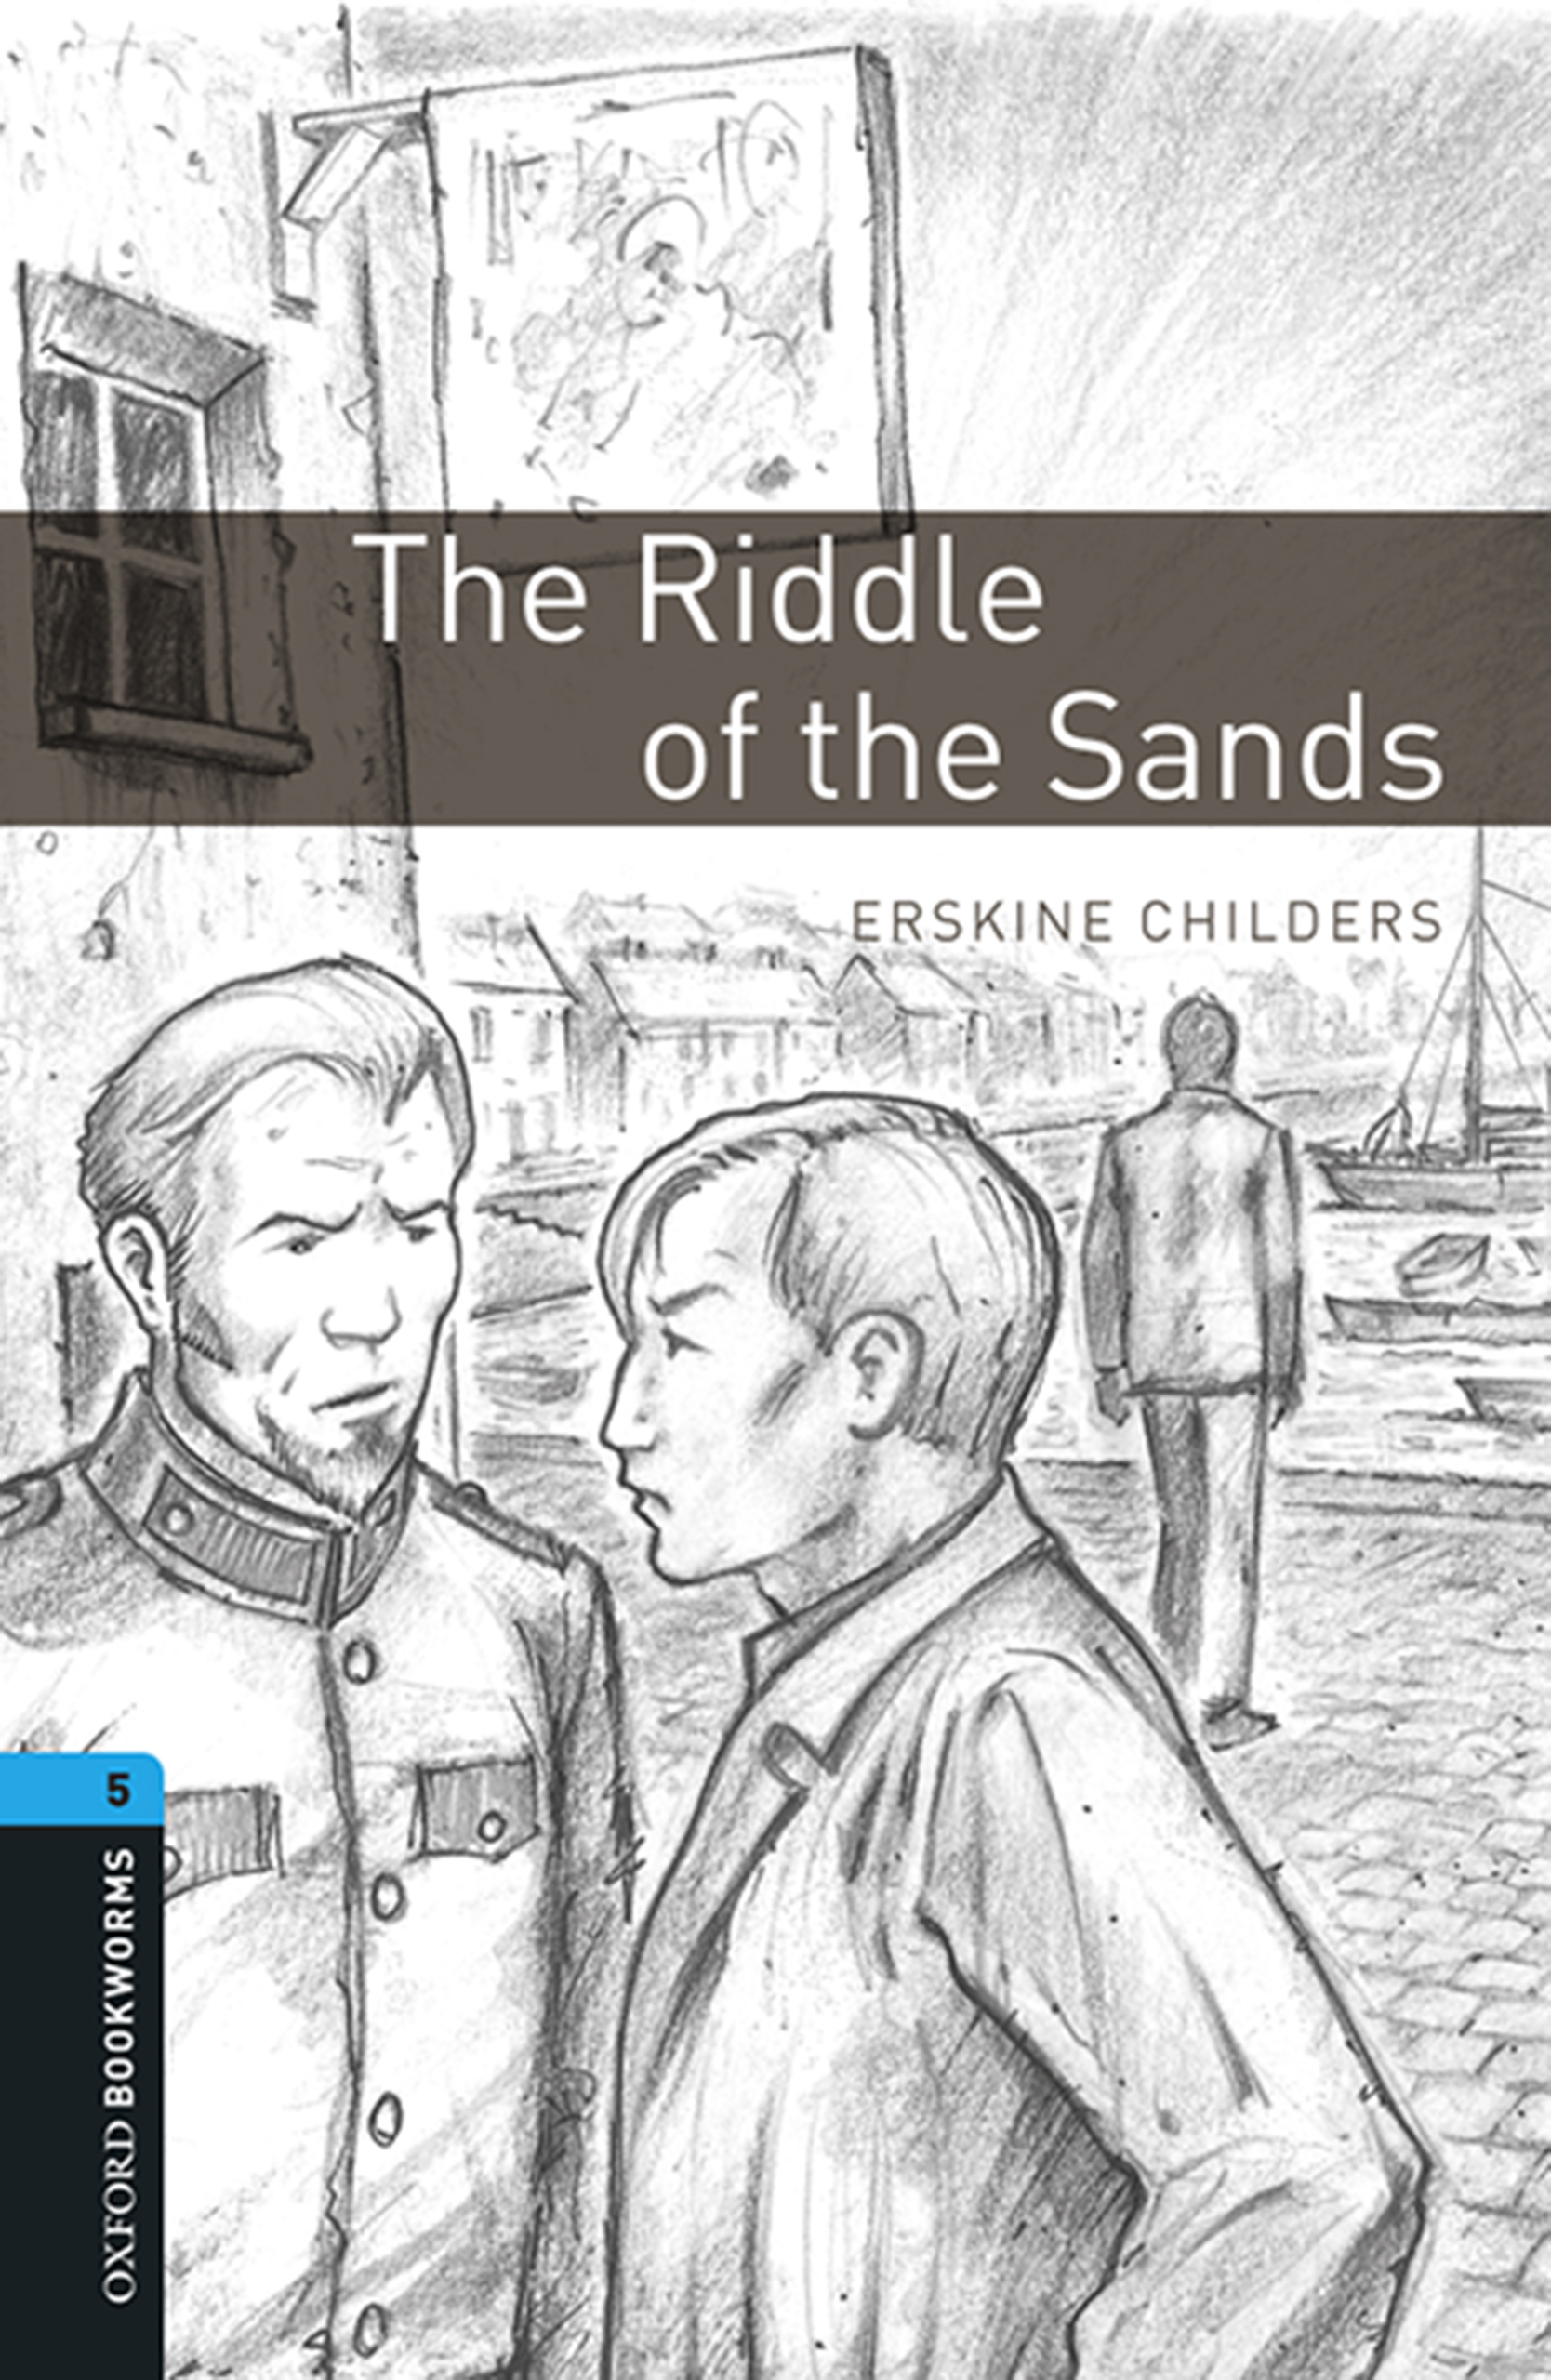 Книга The Riddle of the Sands из серии , созданная Erskine Childers, может относится к жанру Иностранные языки, Иностранные языки, Зарубежная образовательная литература. Стоимость электронной книги The Riddle of the Sands с идентификатором 23573069 составляет 405.87 руб.